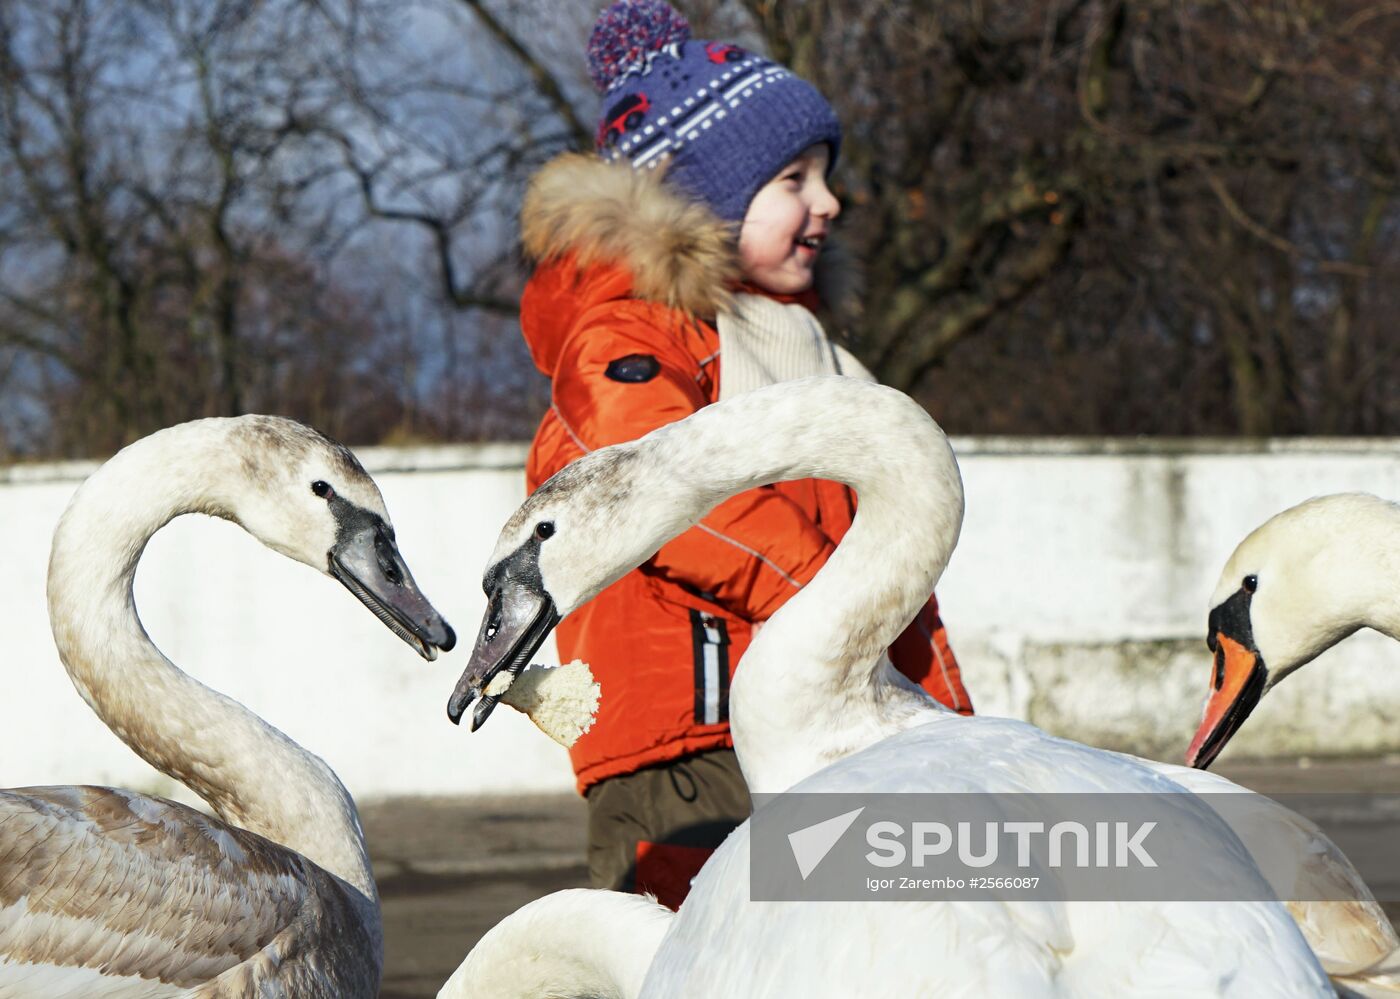 Swans overwinter in Baltiisk harbor